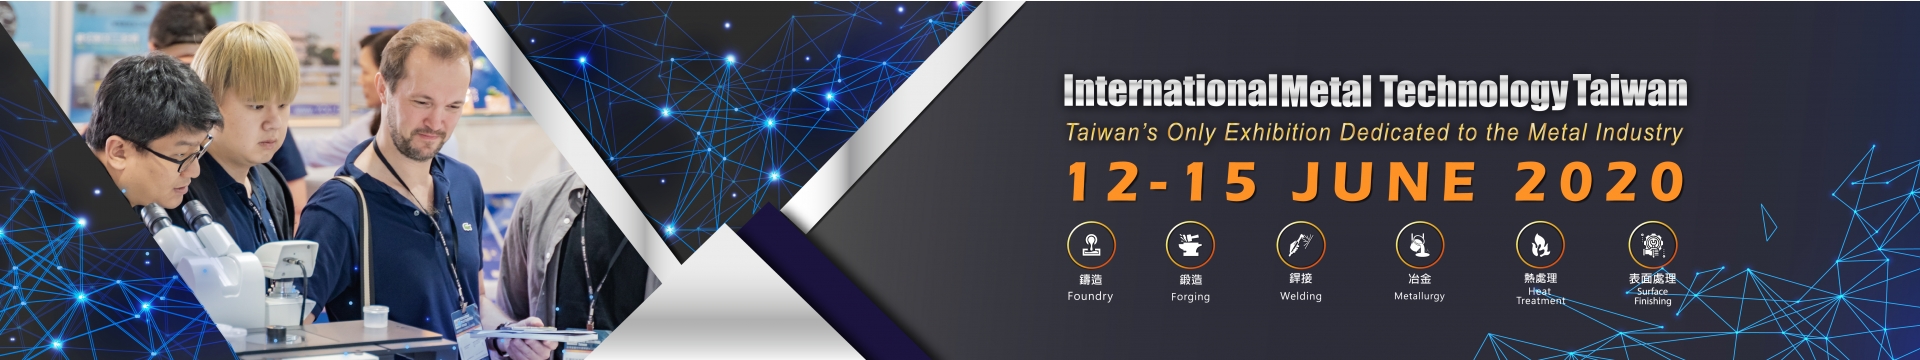 iMT Taiwan 2020